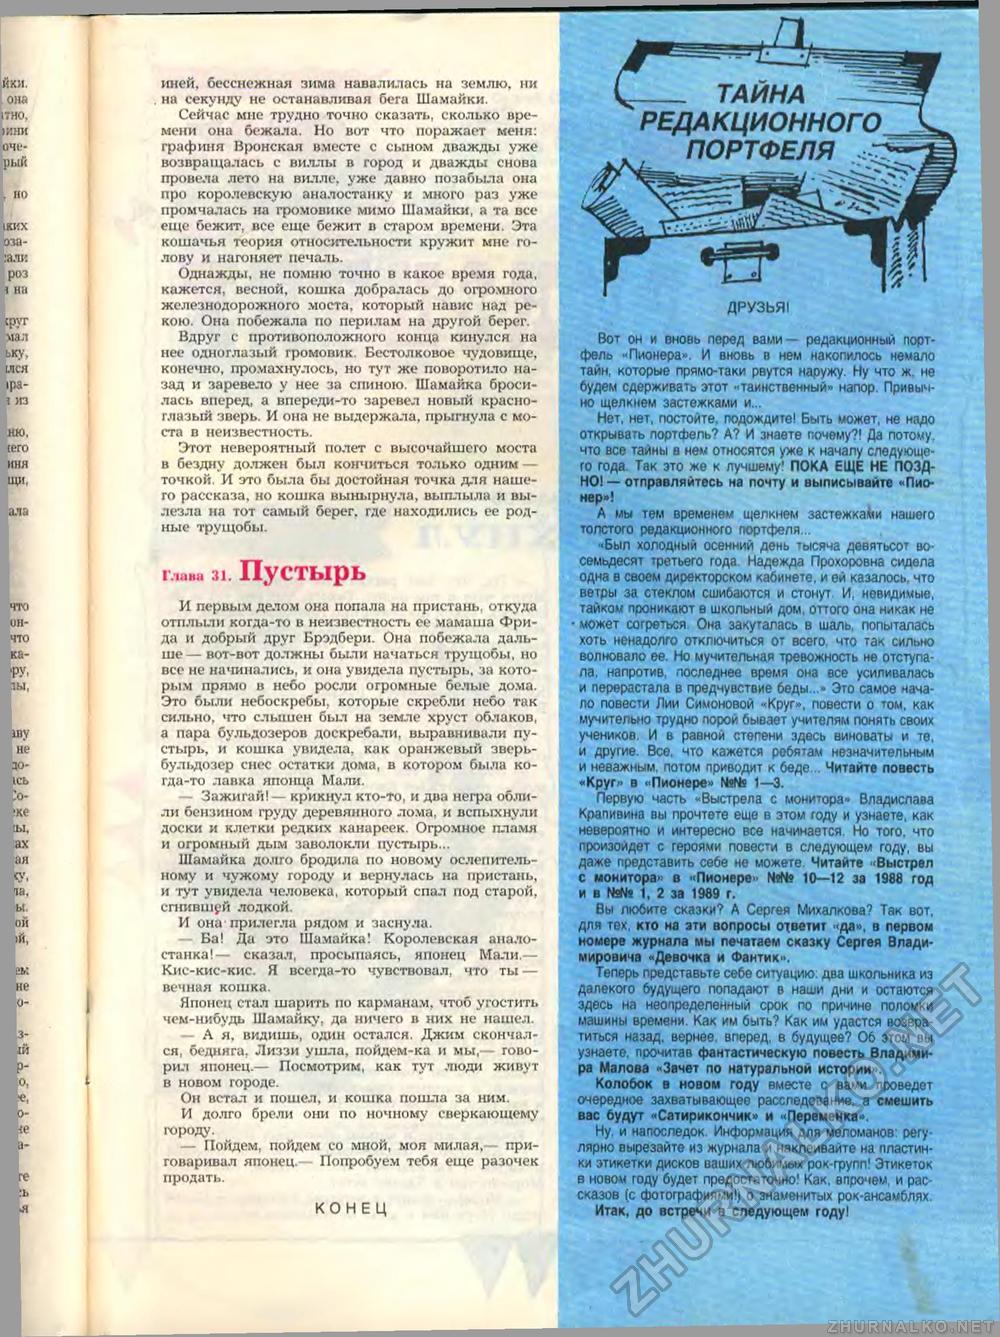 Пионер 1988-09, страница 55